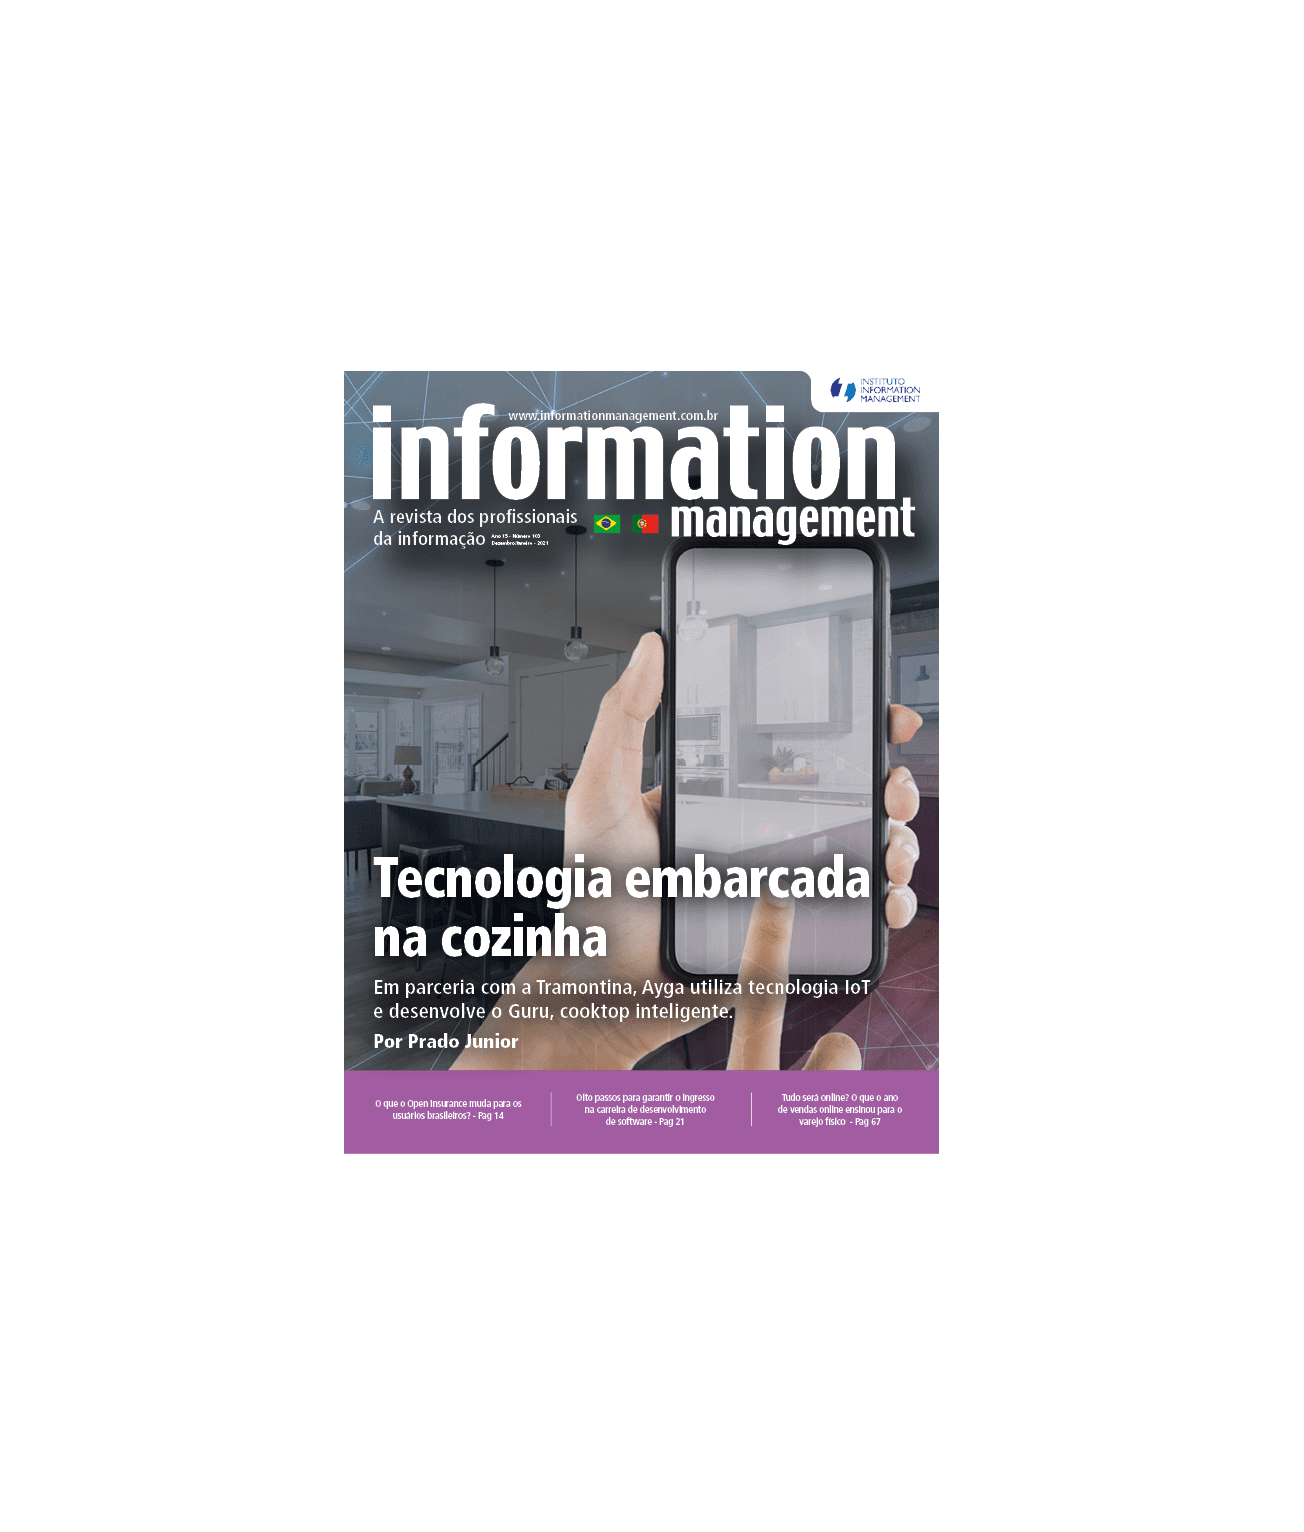 TECNOLOGIA EMBARCADA é matéria de capa da Revista Information Management!